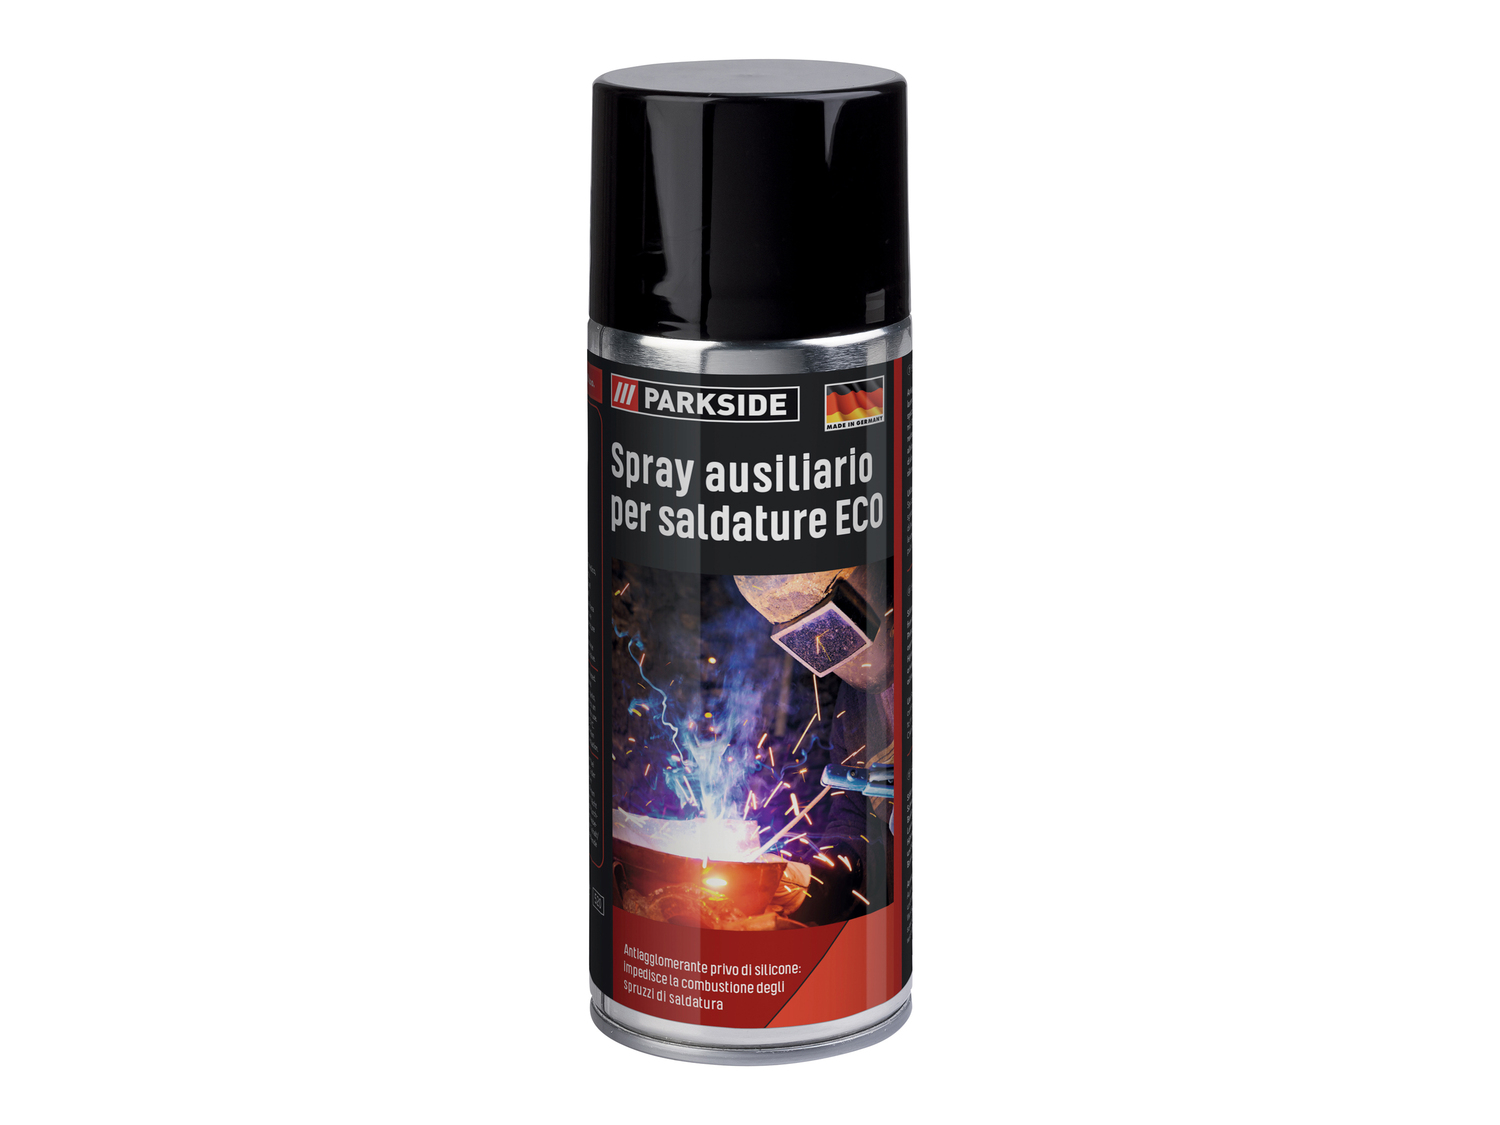 Spray per saldature Parkside, prezzo 1.99 €  

Caratteristiche